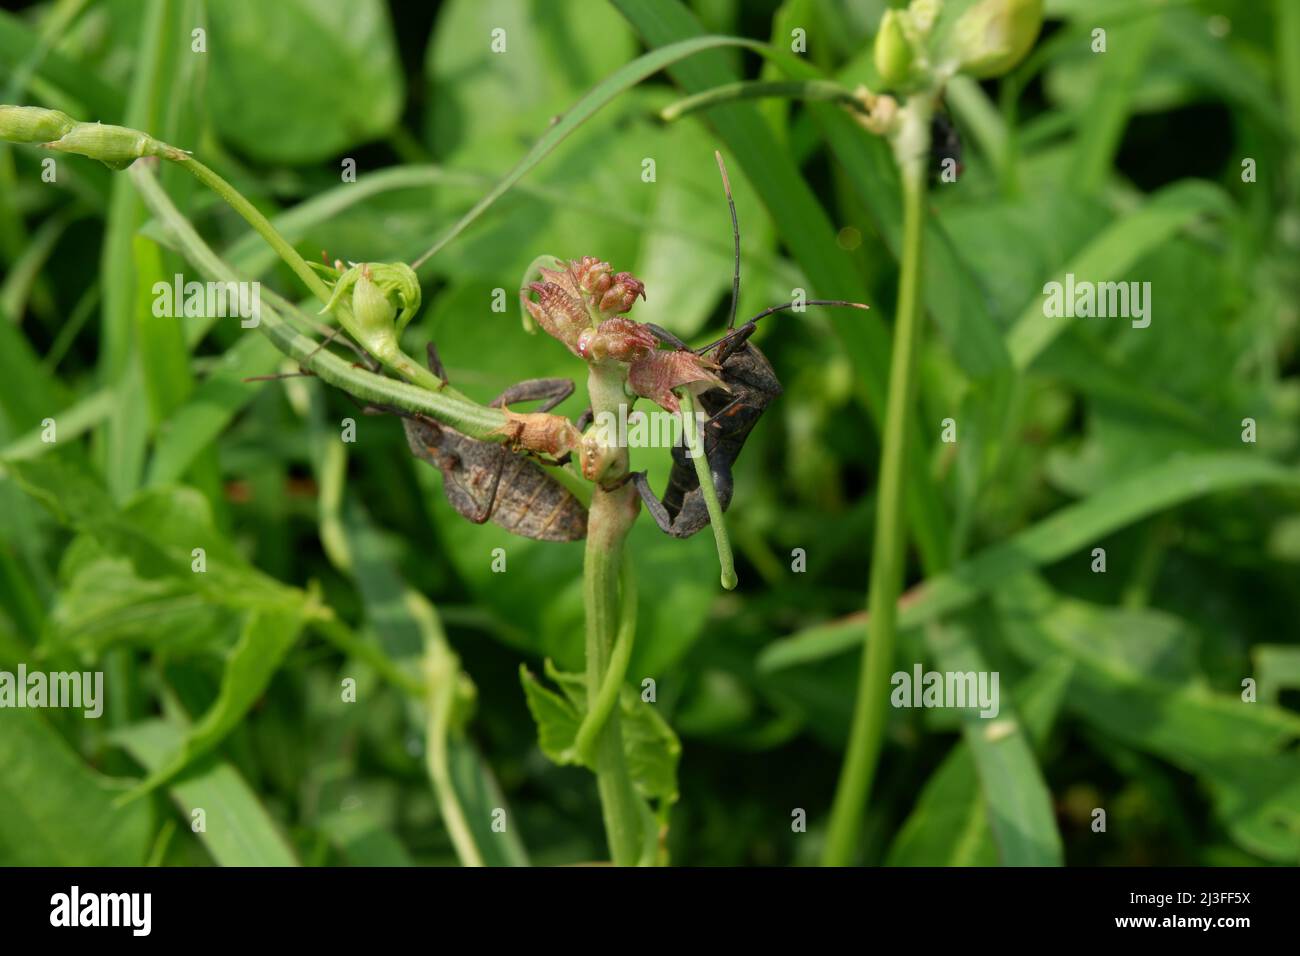 Überblick über einen schwarzen und grauen Squash-Käfer. Coreus marginatus Stockfoto